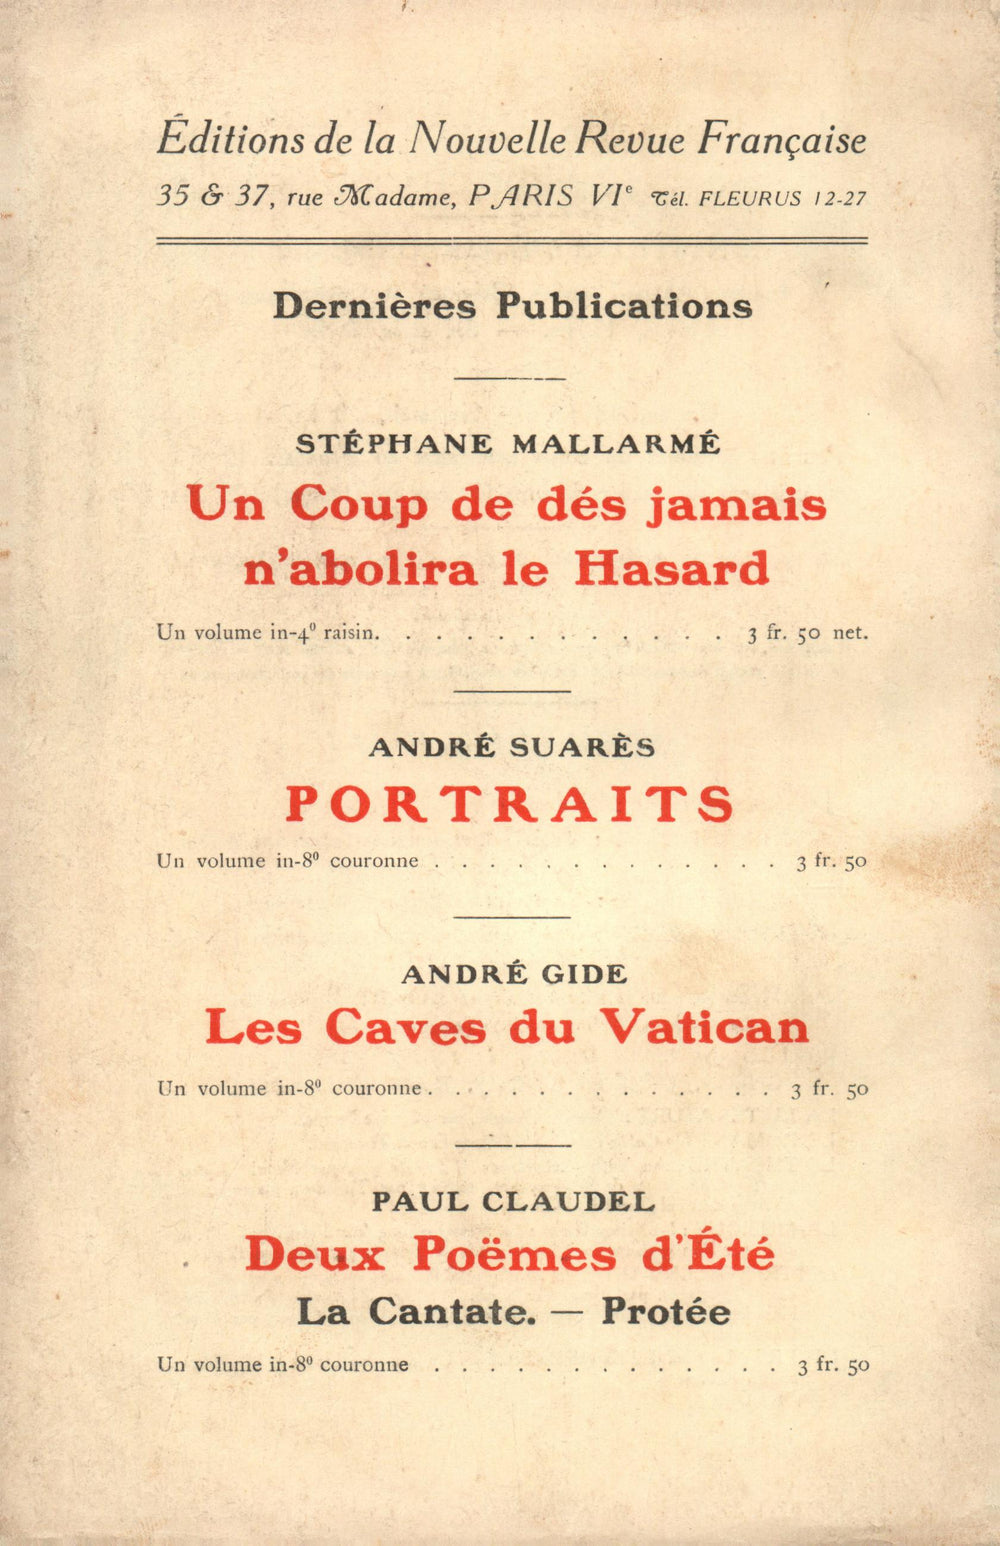 La Nouvelle Revue Française N' 68 (Aoűt 1914)